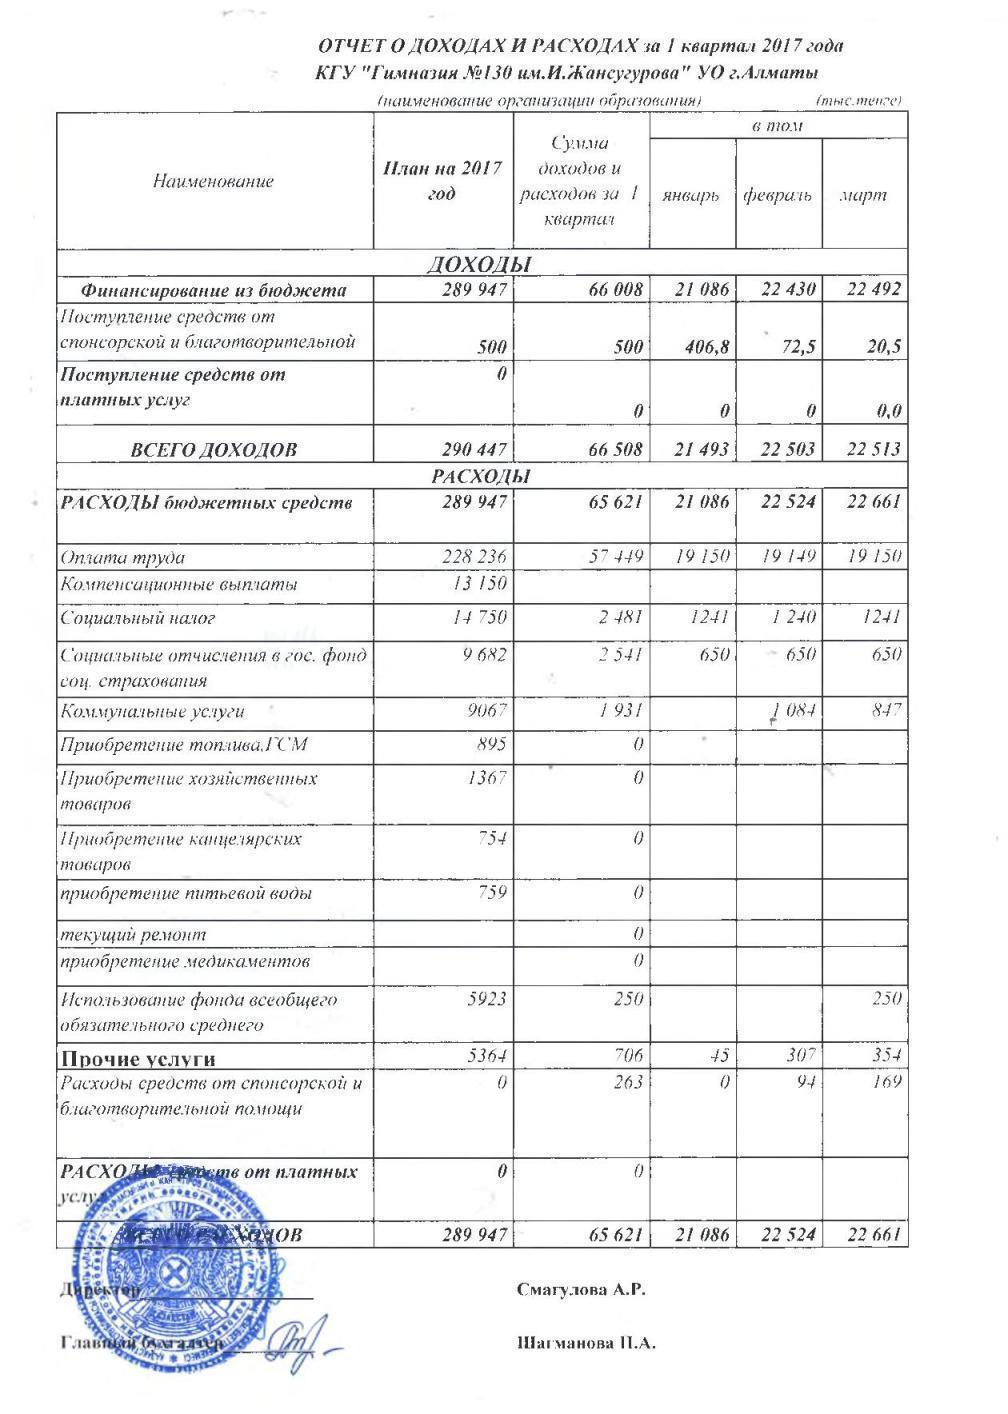 Отчет о доходах и расходах за 1кв 2017г